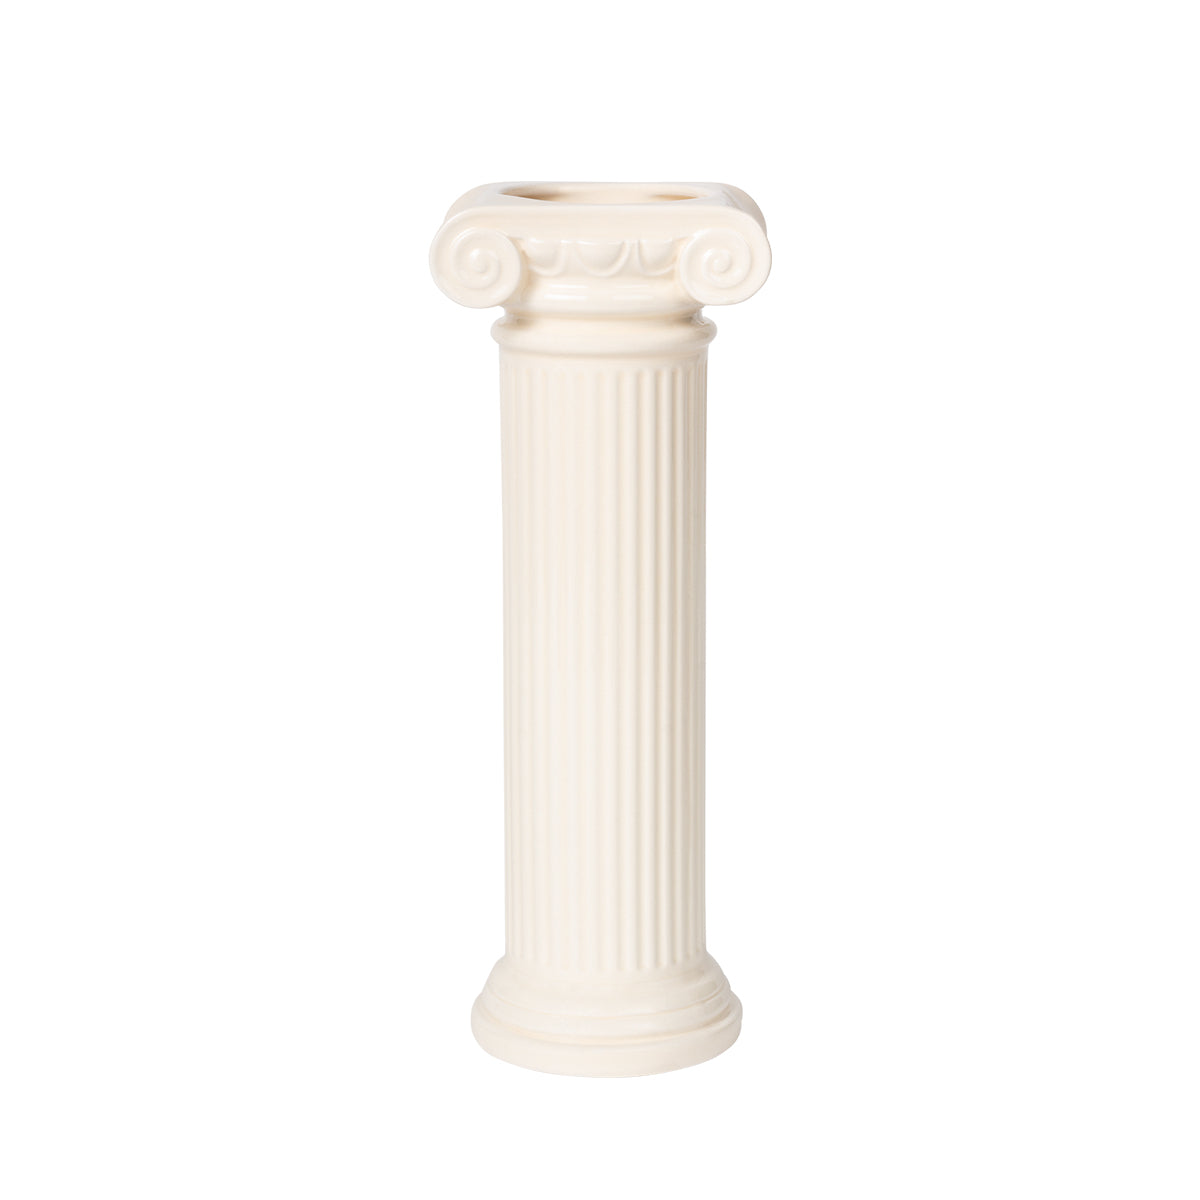 Greek Series Athena Vase White